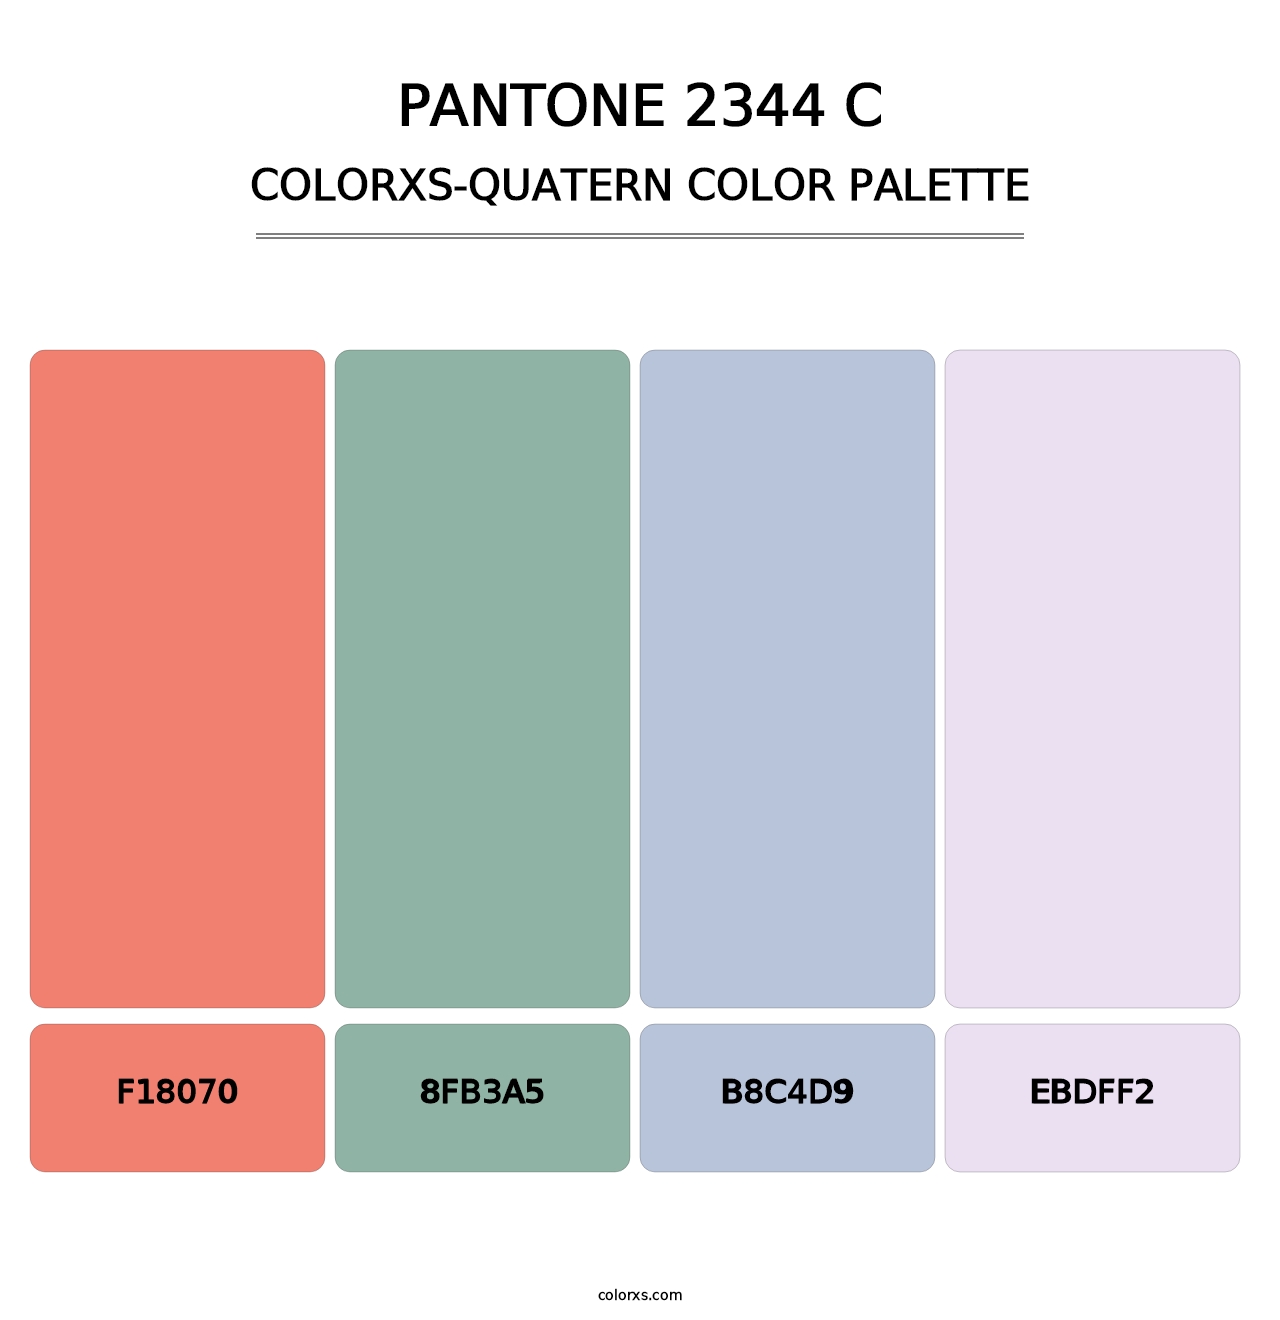 PANTONE 2344 C - Colorxs Quatern Palette